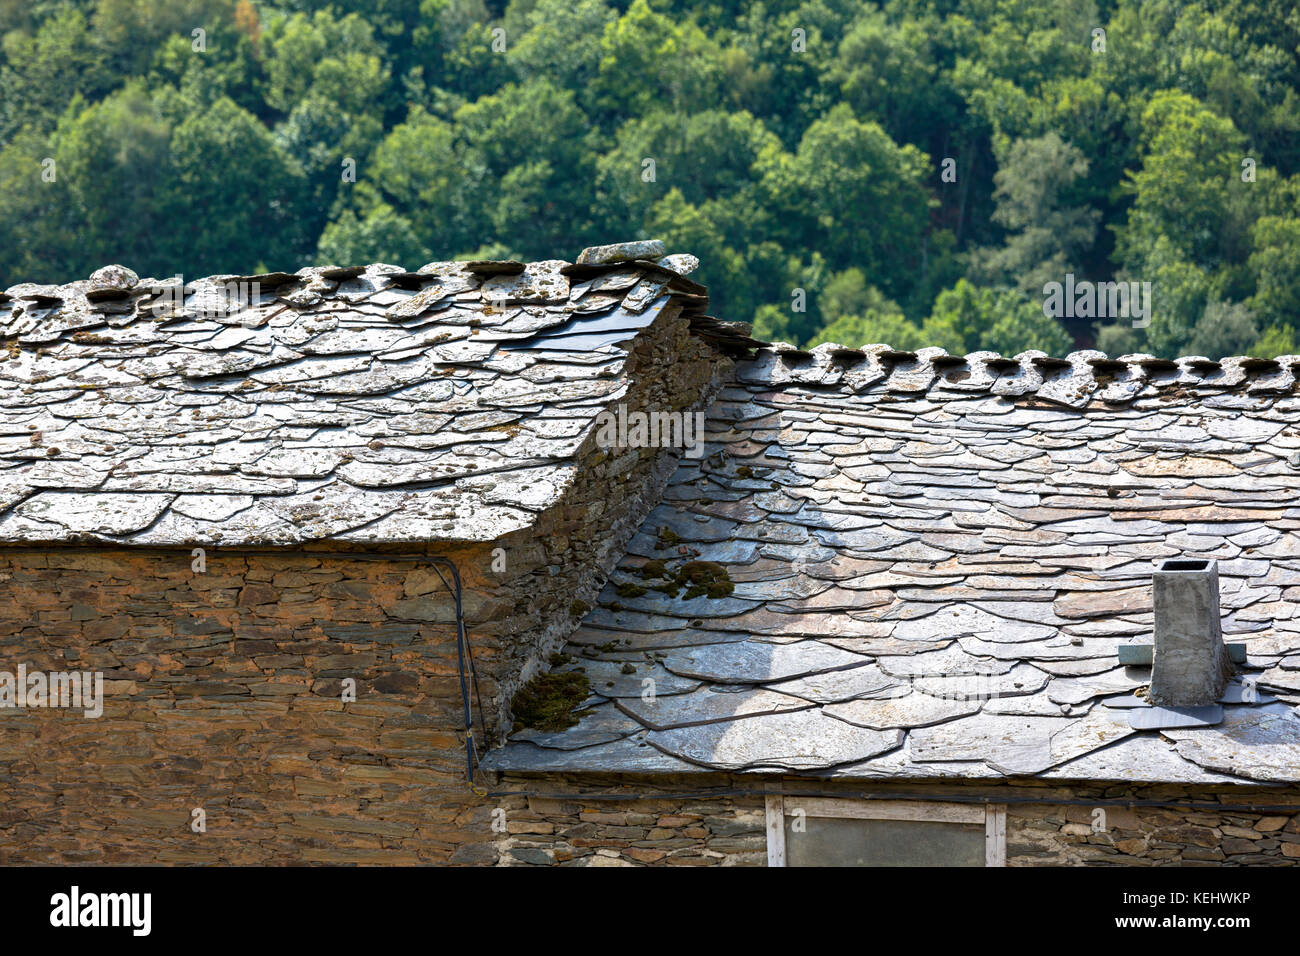 Architecture traditionnelle espagnole typique de toit d'ardoise à Triacastela en Galice, Espagne Banque D'Images